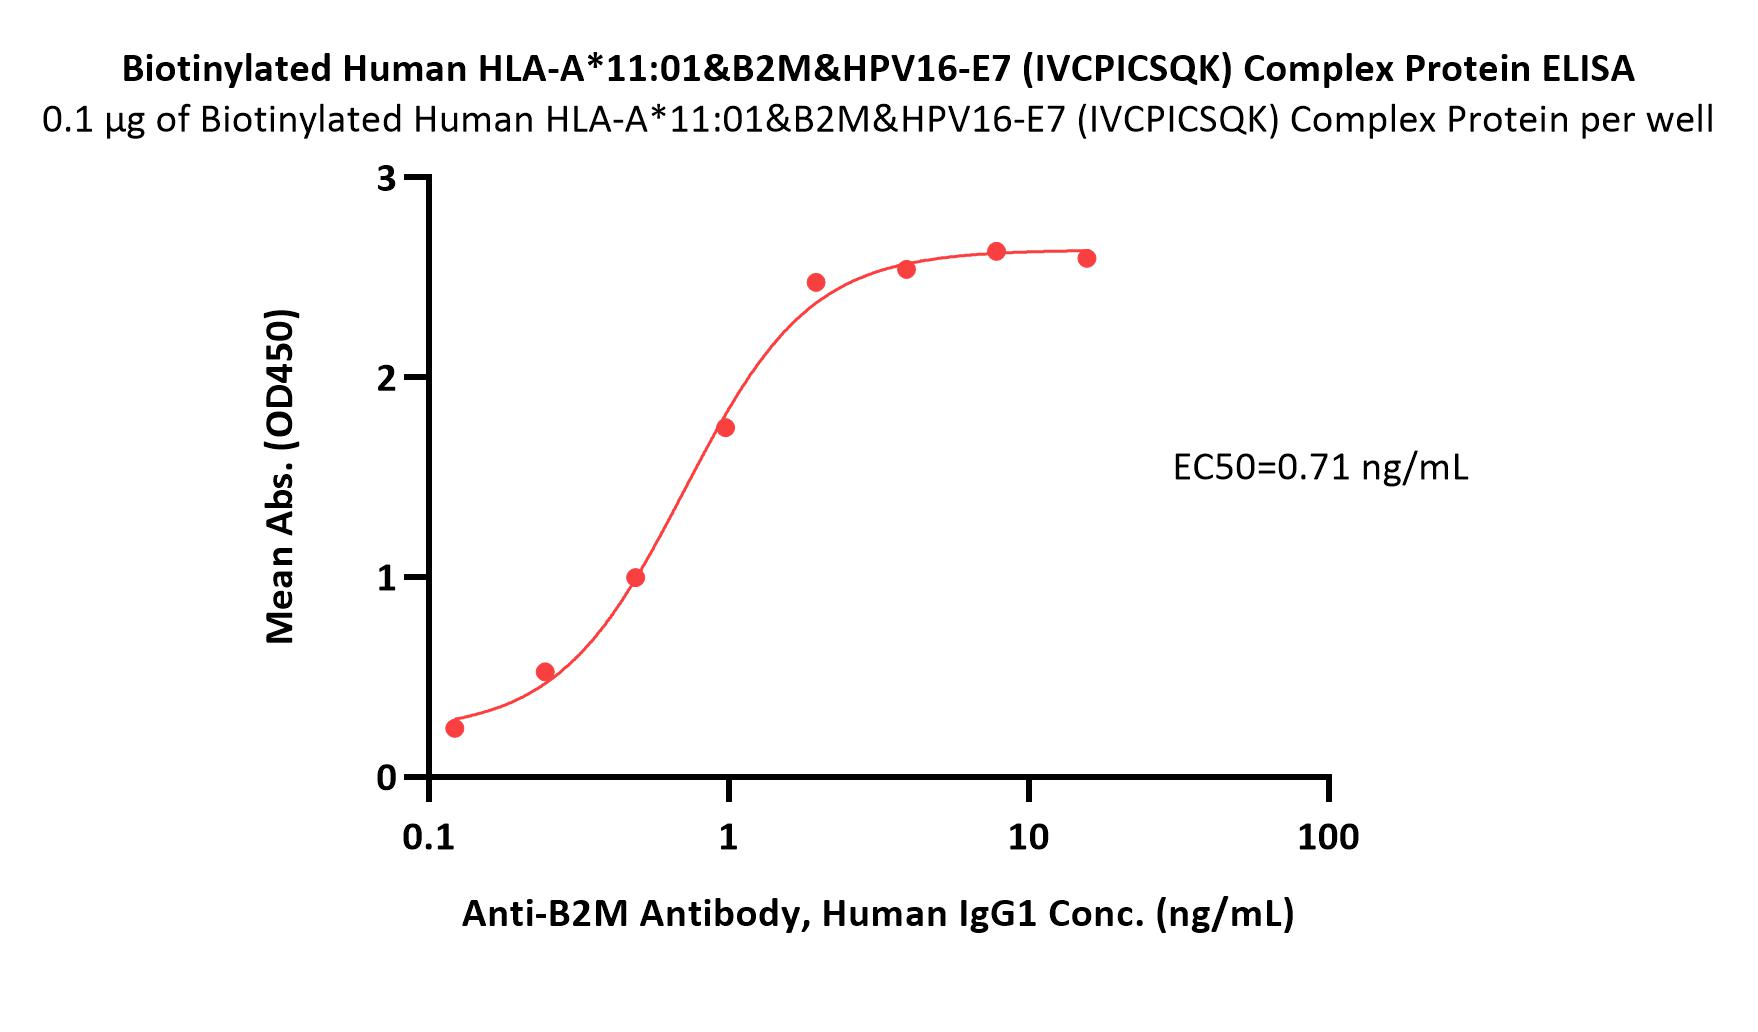 HLA-A*1101 & B2M & HPV16-E7 (IVCPICSQK) ELISA